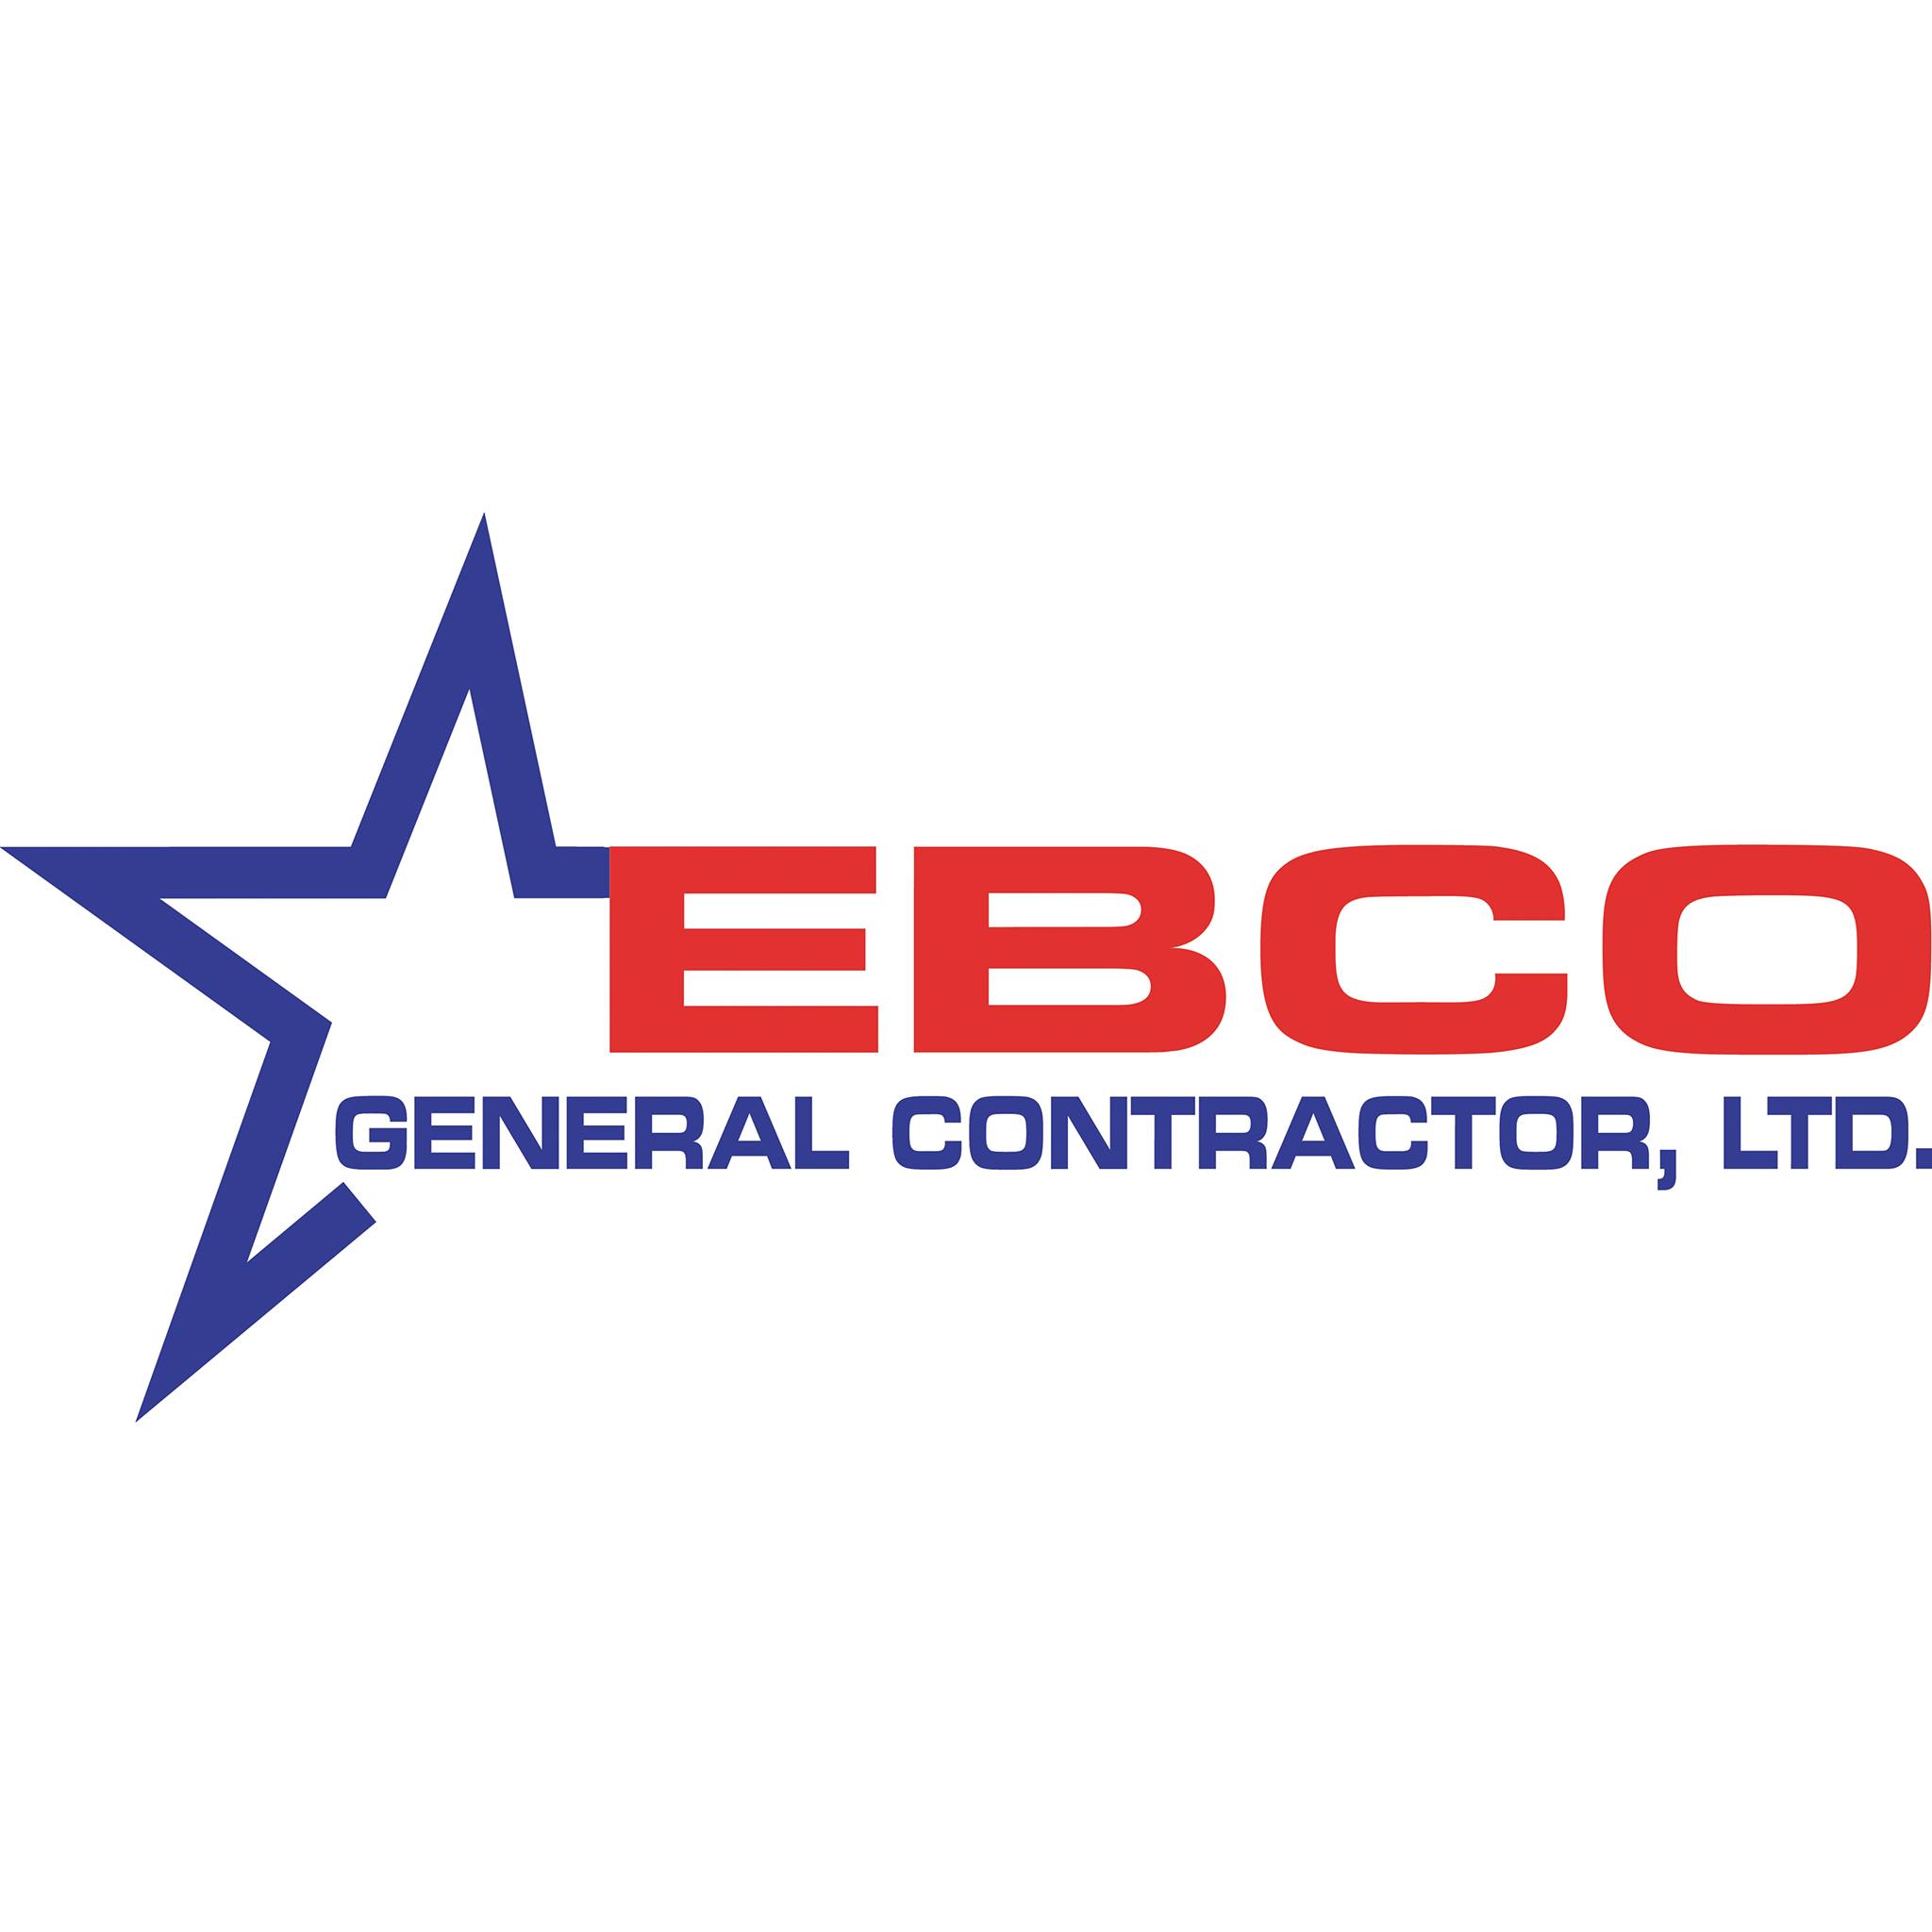 EBCO General Contractor, Ltd